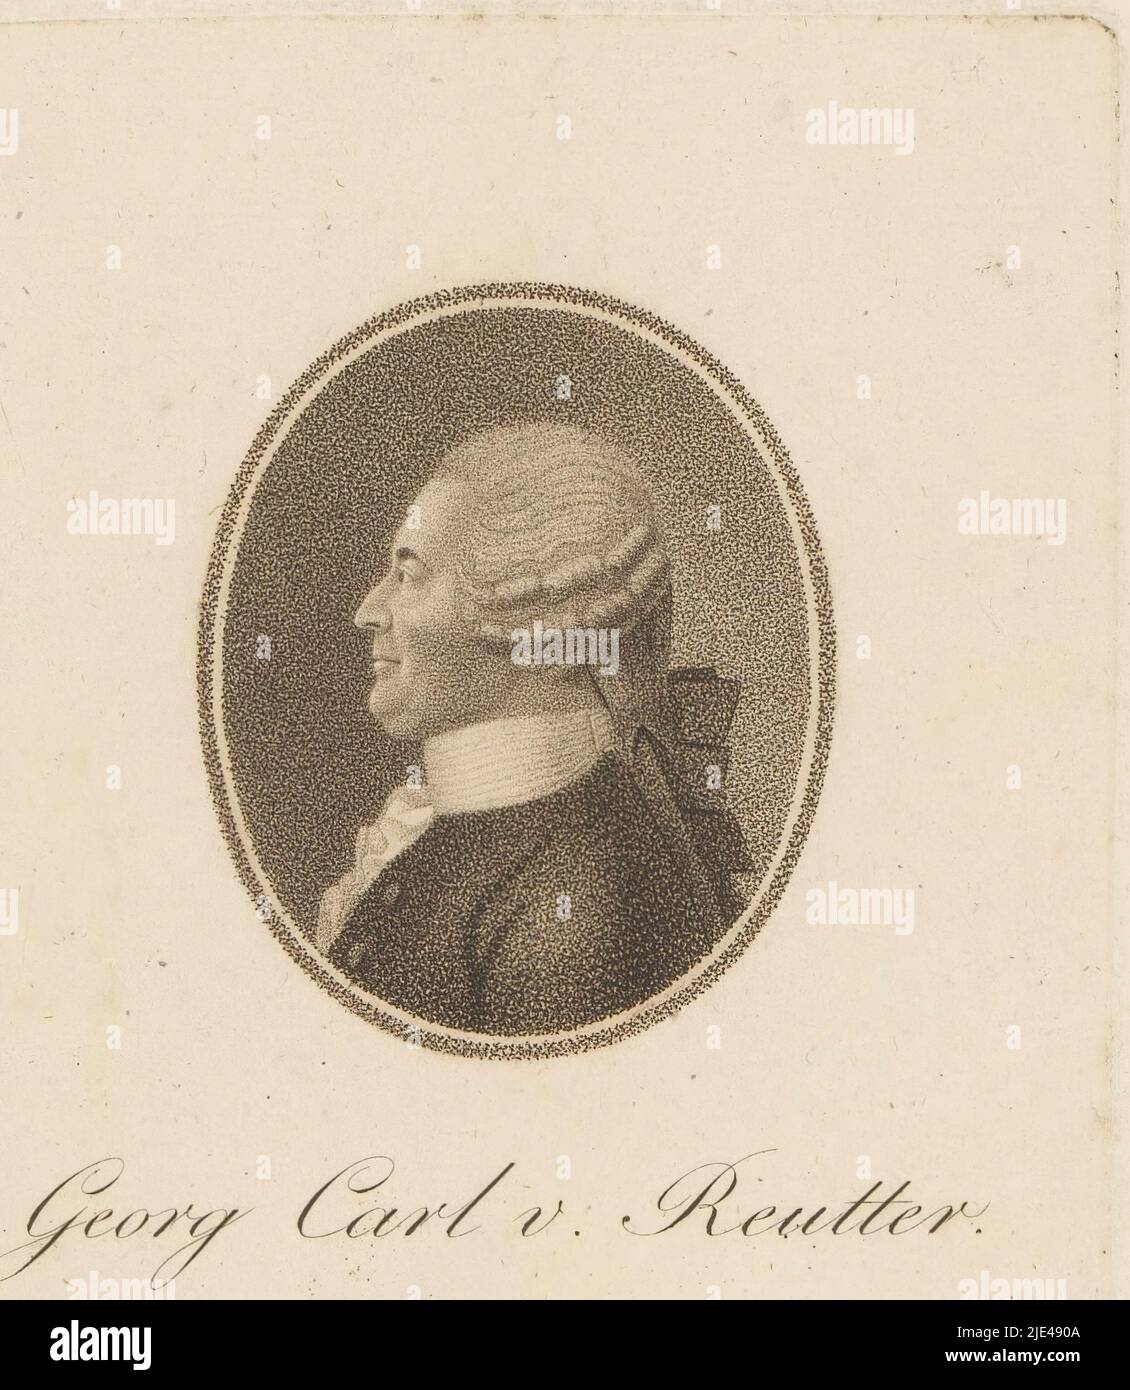 Portrait de Johann Georg Reutter, Johann Putz, 1750 - 1844, imprimerie : Johann Putz, 1750 - 1844, papier, gravure, h 148 mm - l 103 mm Banque D'Images